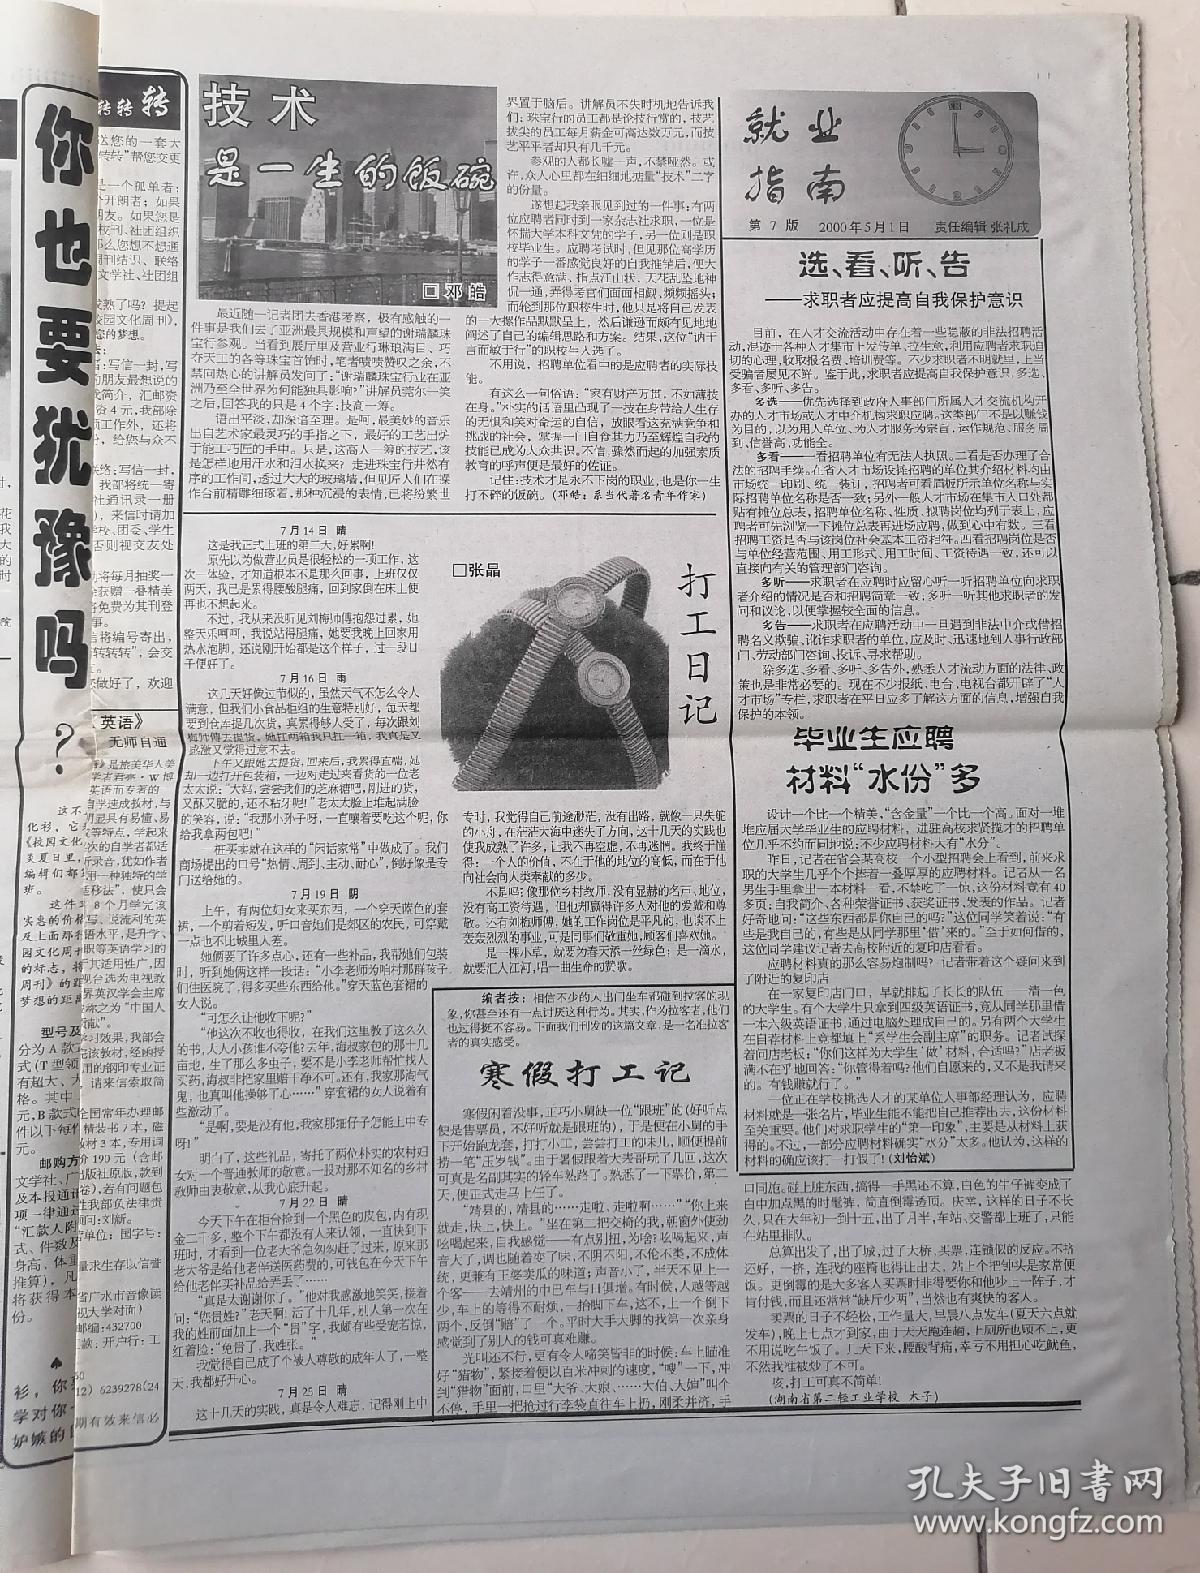 2000年5月1日老报纸-中国特产报-《校园文化周刊》